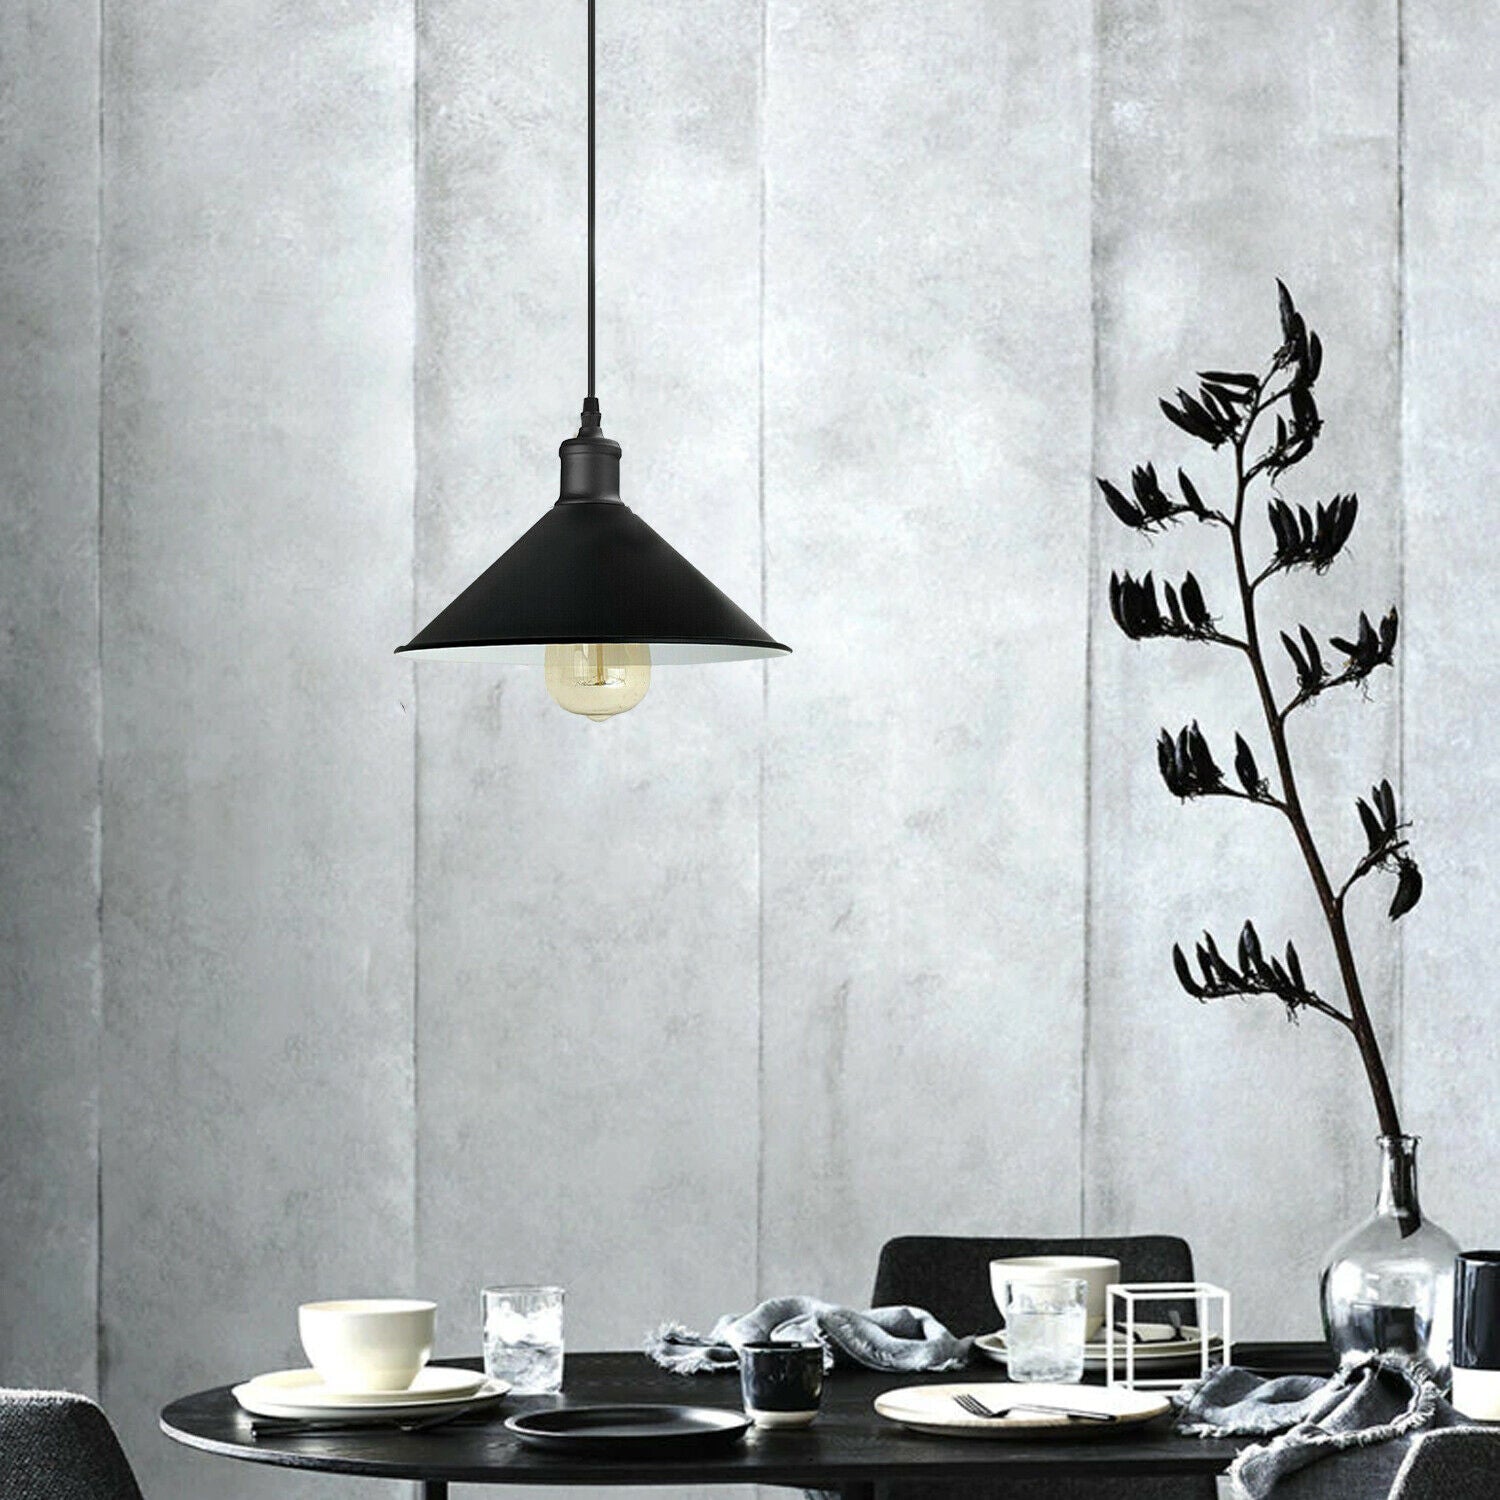 Black Cone Pendant Light for dining room.JPG